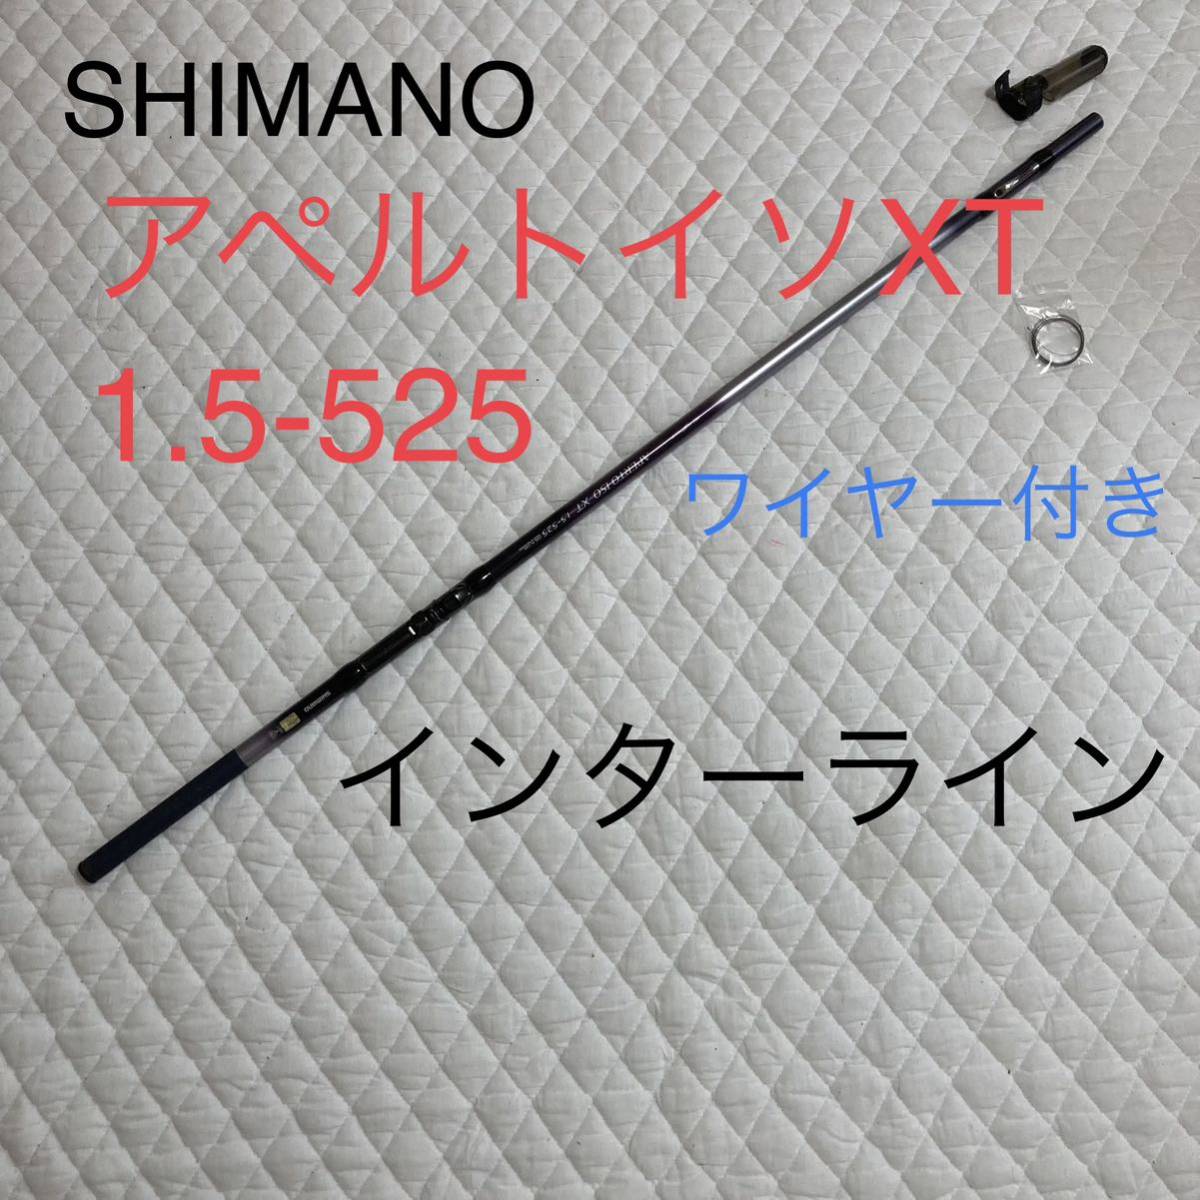 世界的に有名な SHIMANO アペルトイソ 雨風に強い インターライン